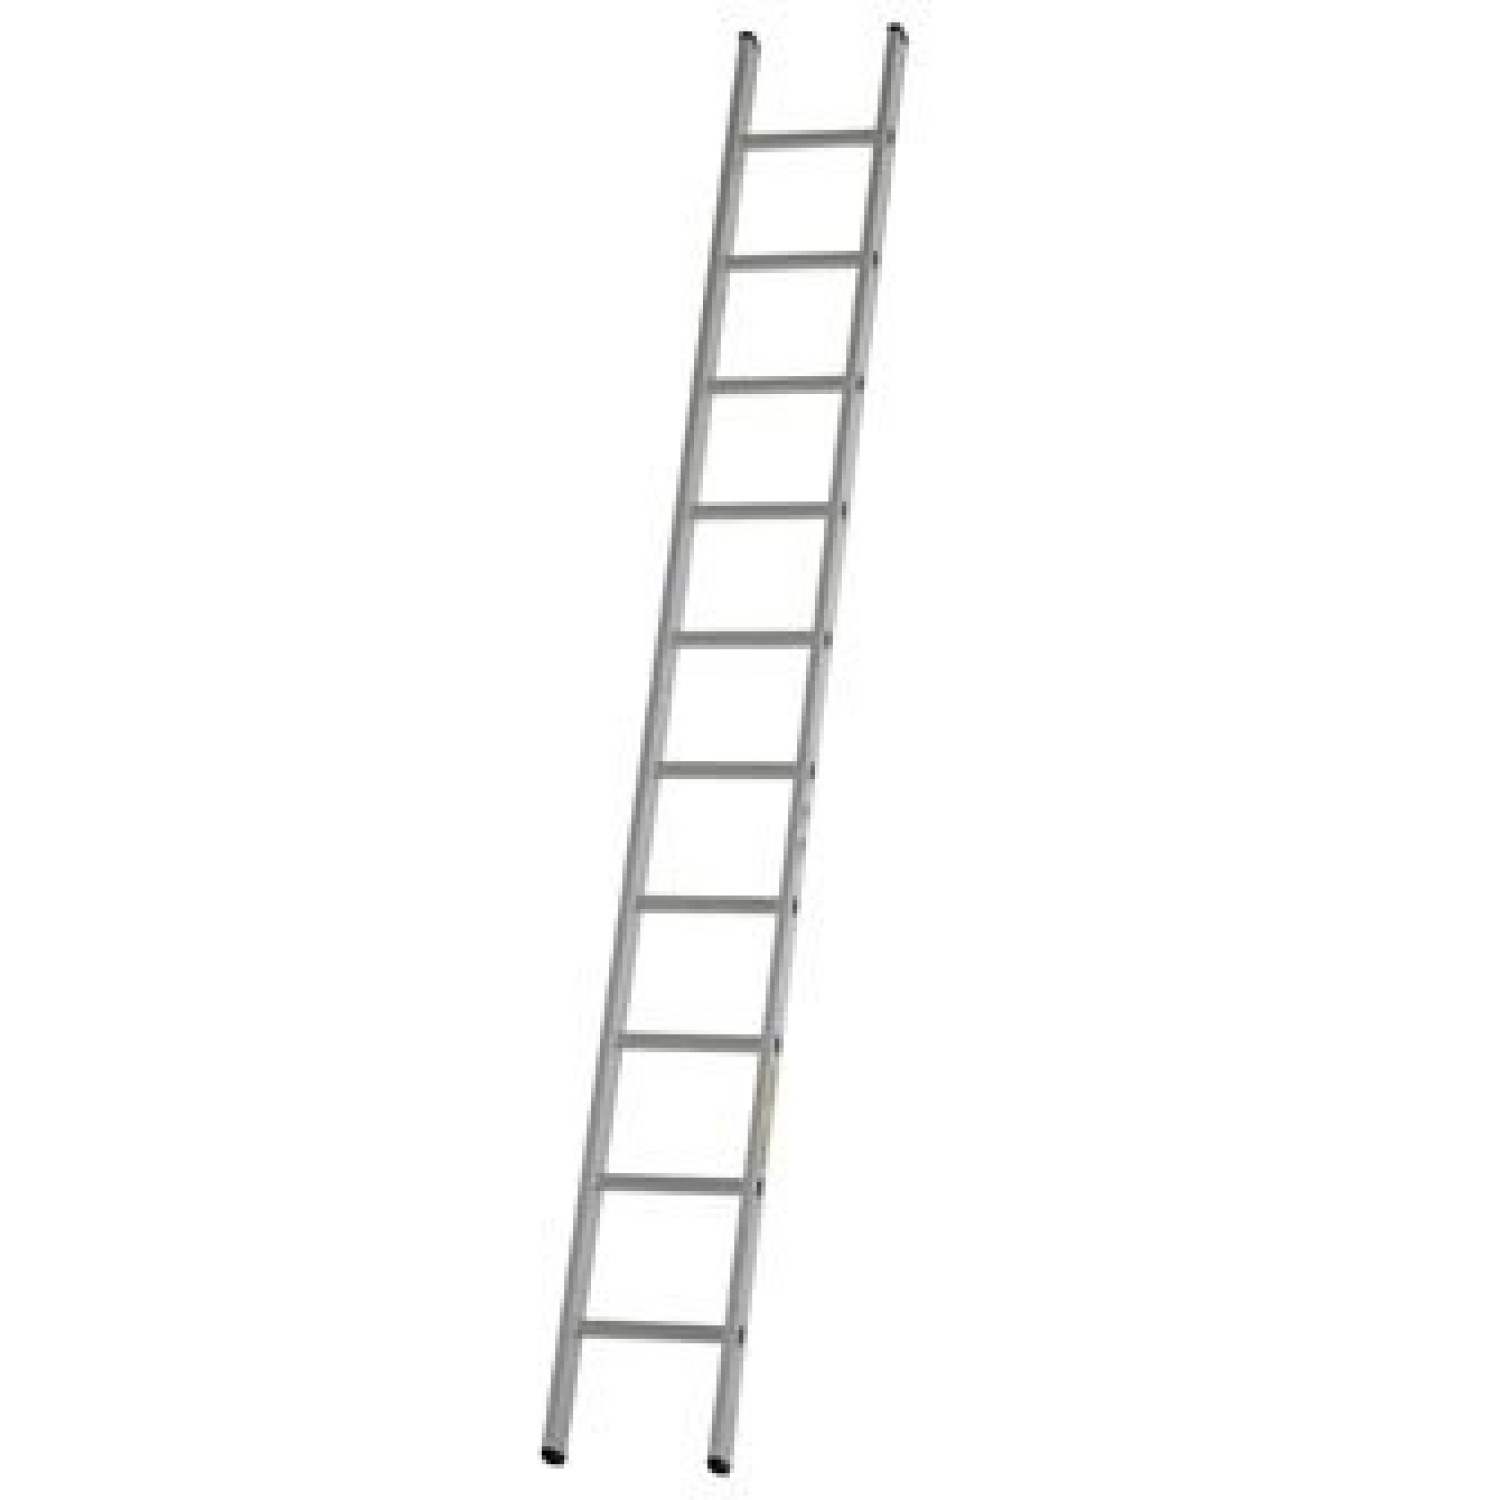 Dirks Enkele rechte ladder 5.8 meter gecoat